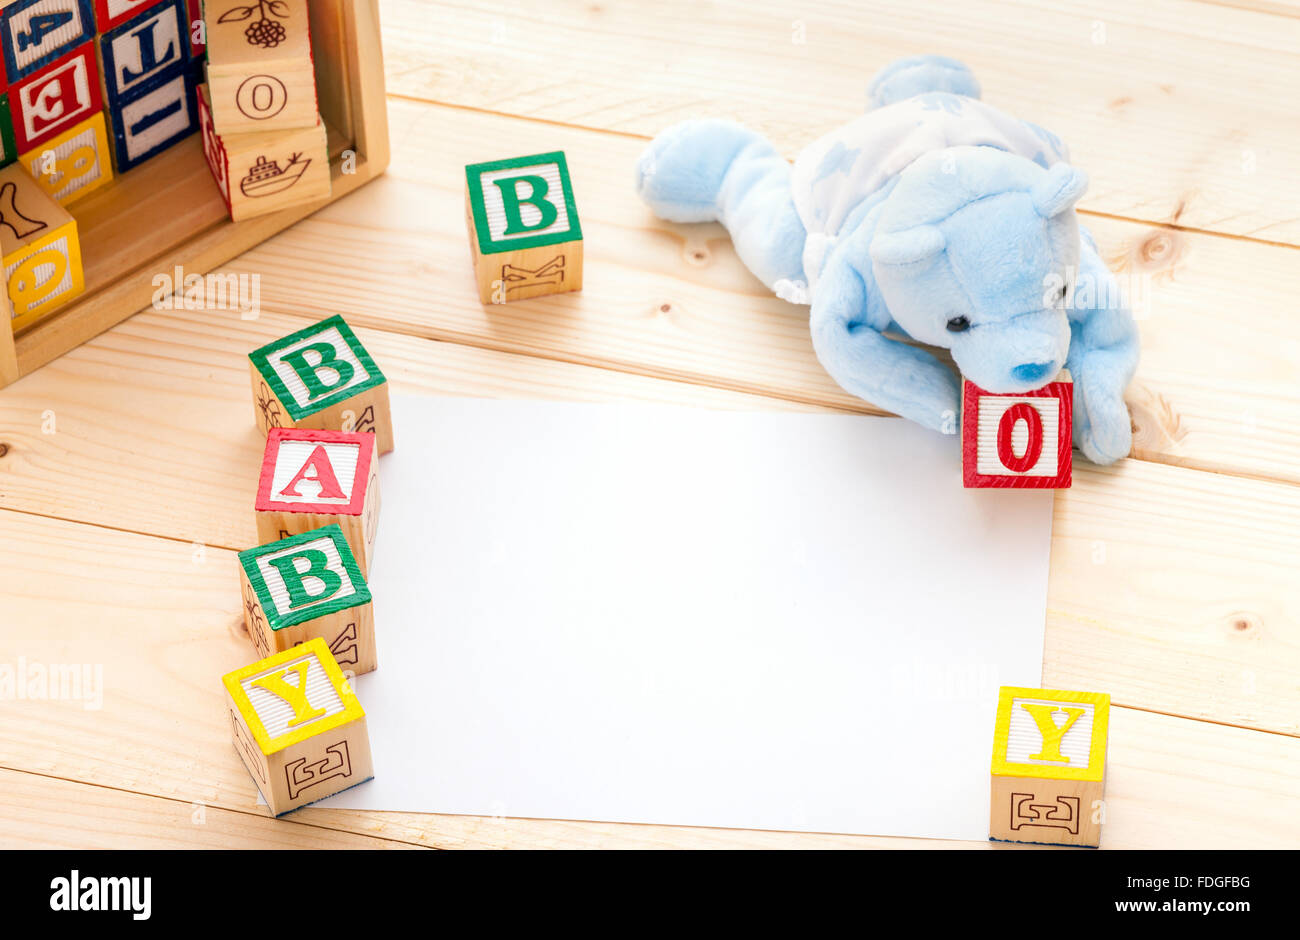 Annuncio di nascita invito un giocattolo blu portano l'ortografia delle parole baby boy con il giocattolo di legno su blocchi di legno di pino sullo sfondo del pavimento Foto Stock